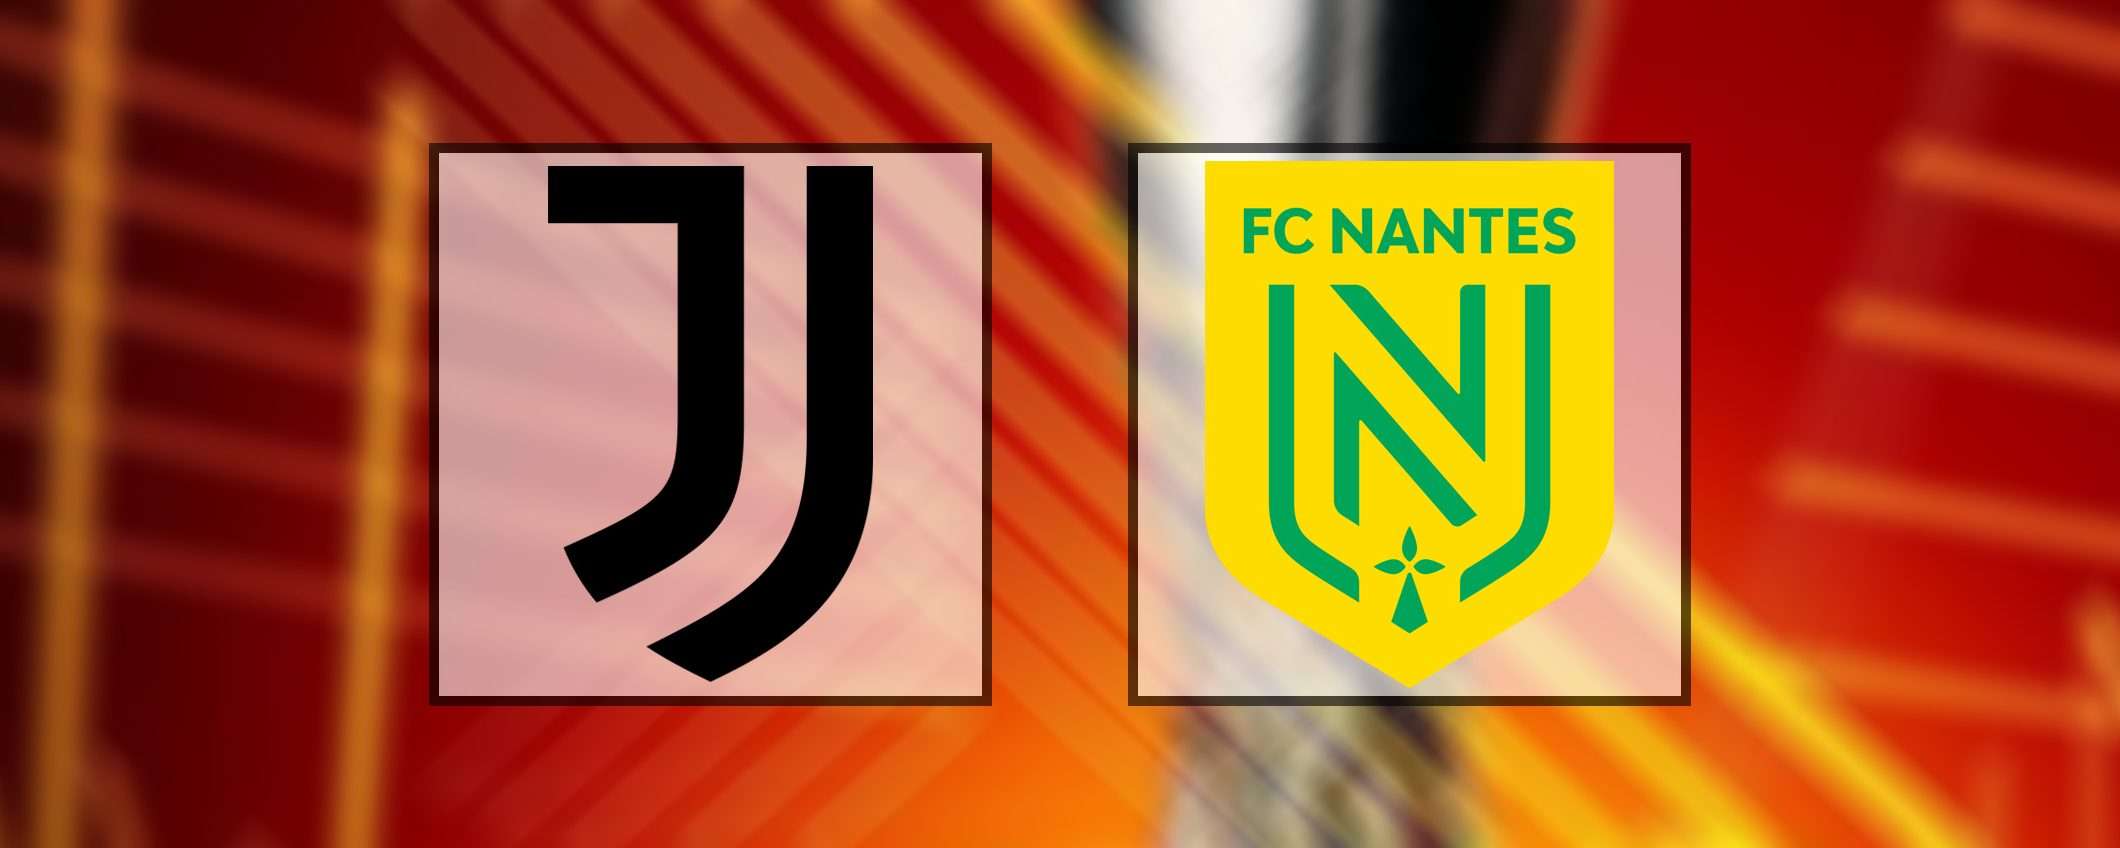 Come vedere Juventus-Nantes in streaming e gratis